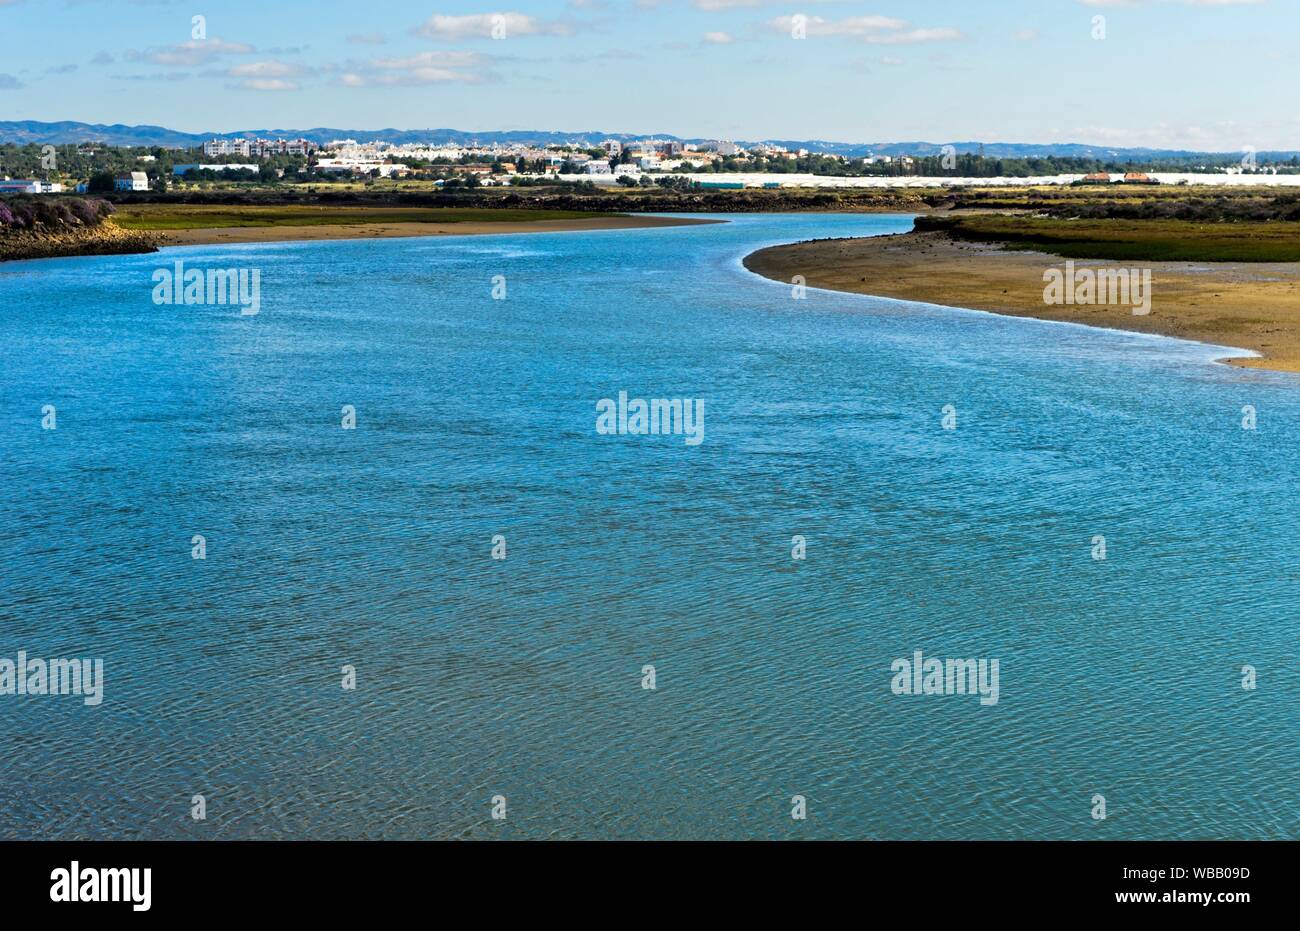 Gilao river, view towards Tavira from Quatro Aguas, Tavira, Algarve, Portugal. Stock Photo